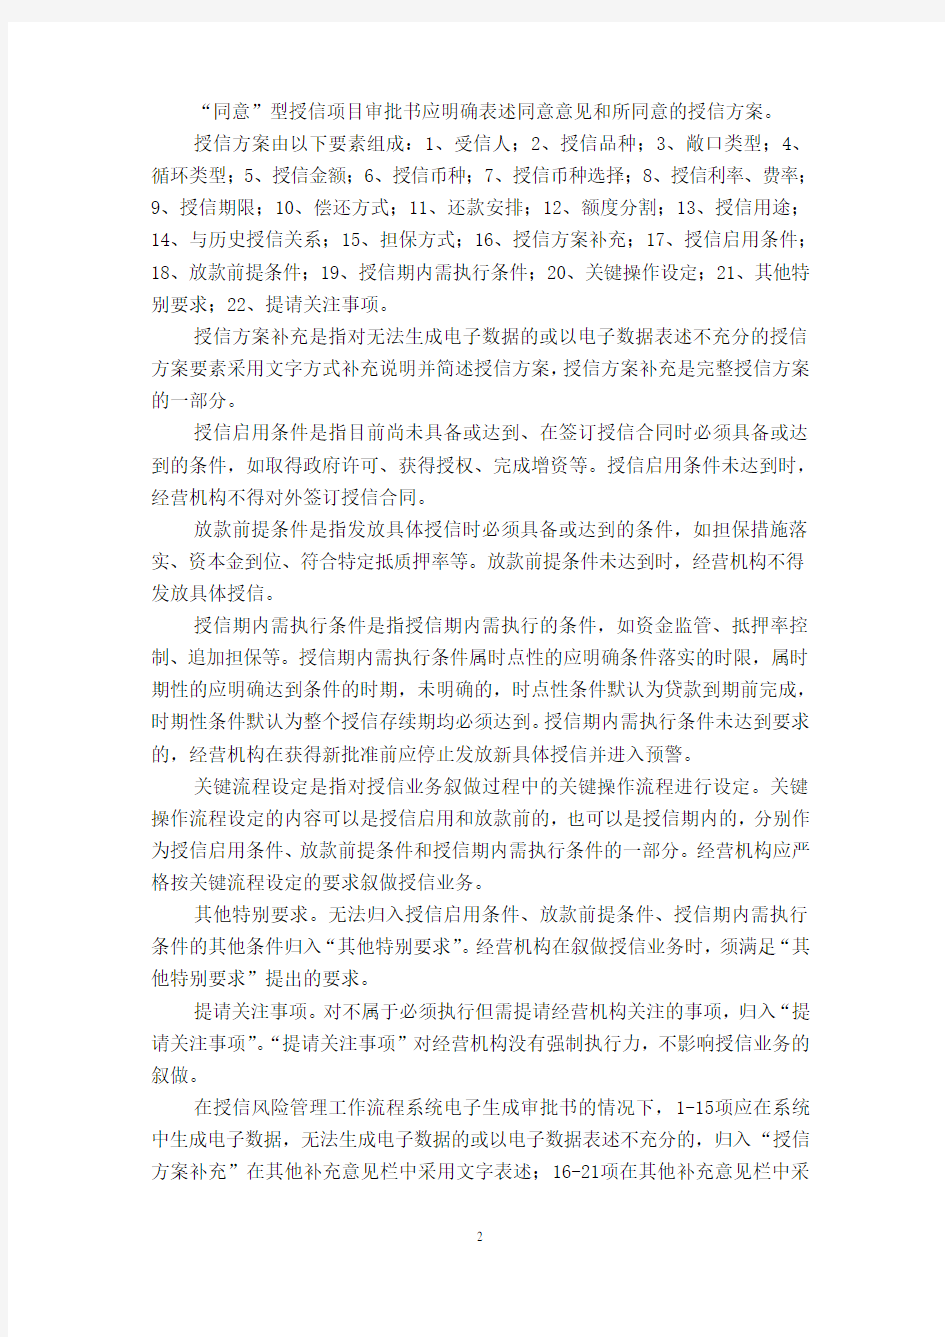 中国民生银行授信审批通知书管理办法